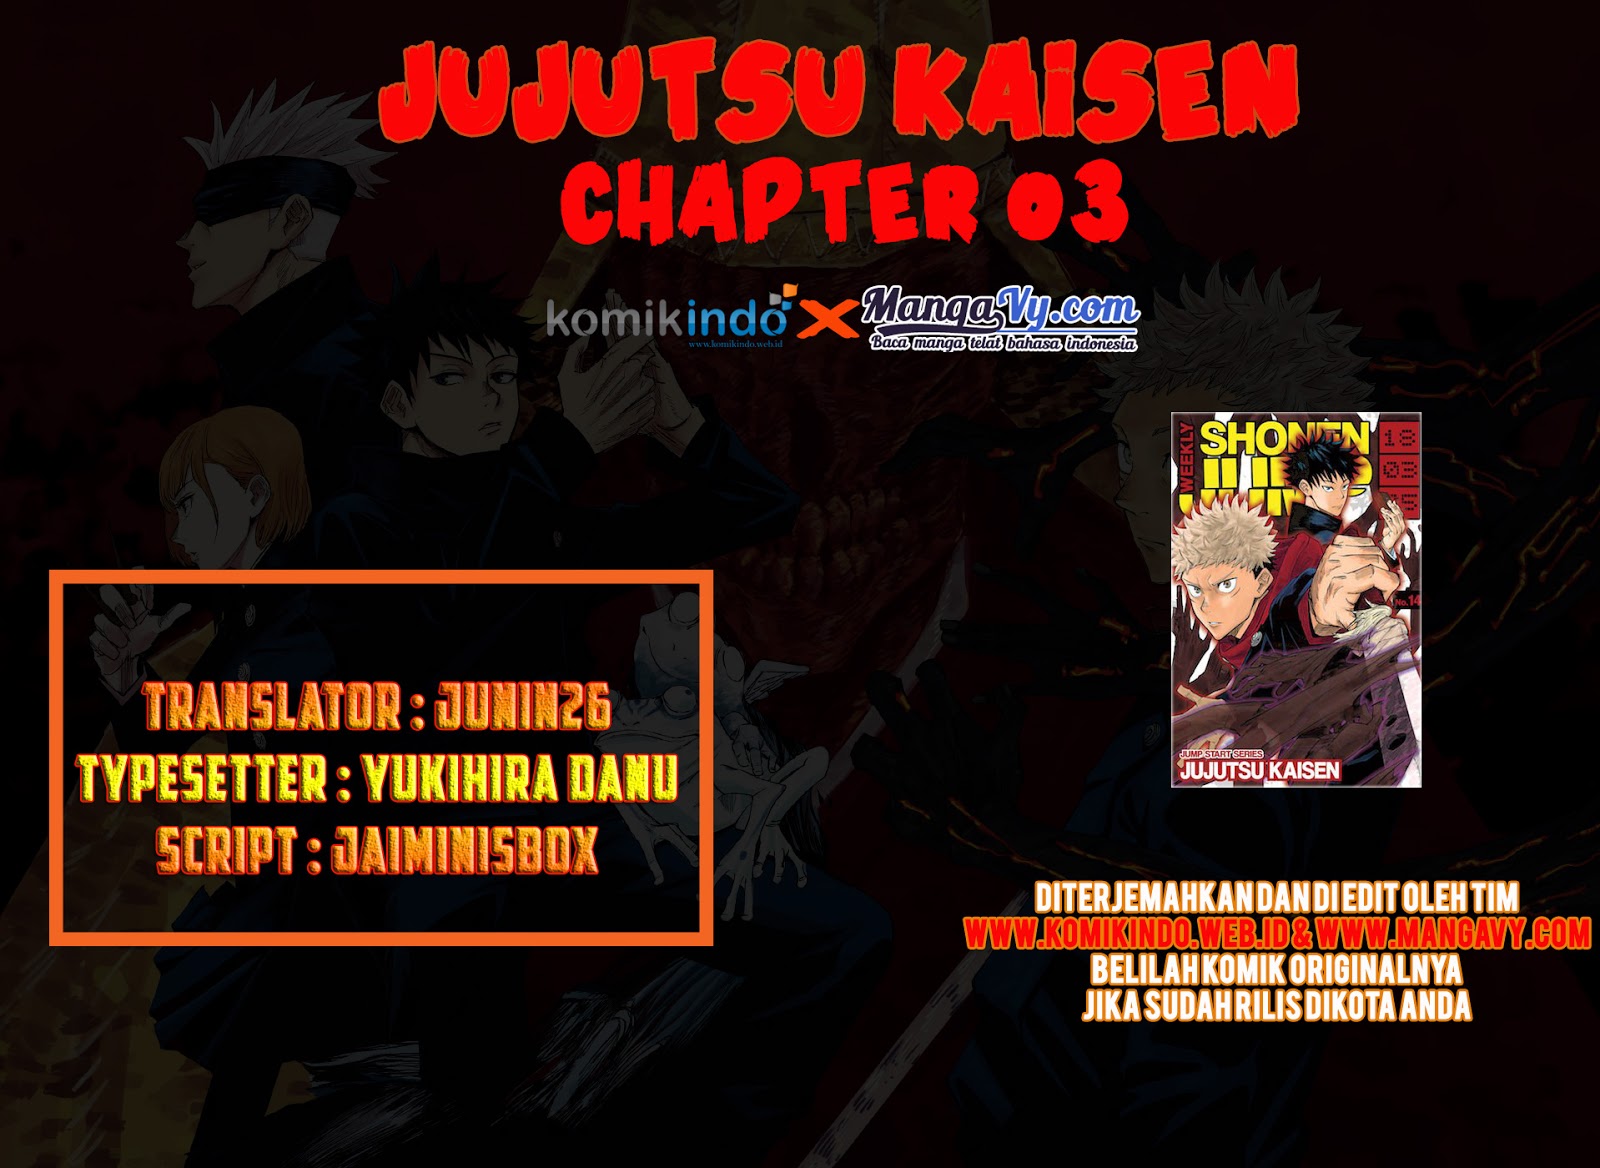 Jujutsu Kaisen: Chapter 3 - Page 1